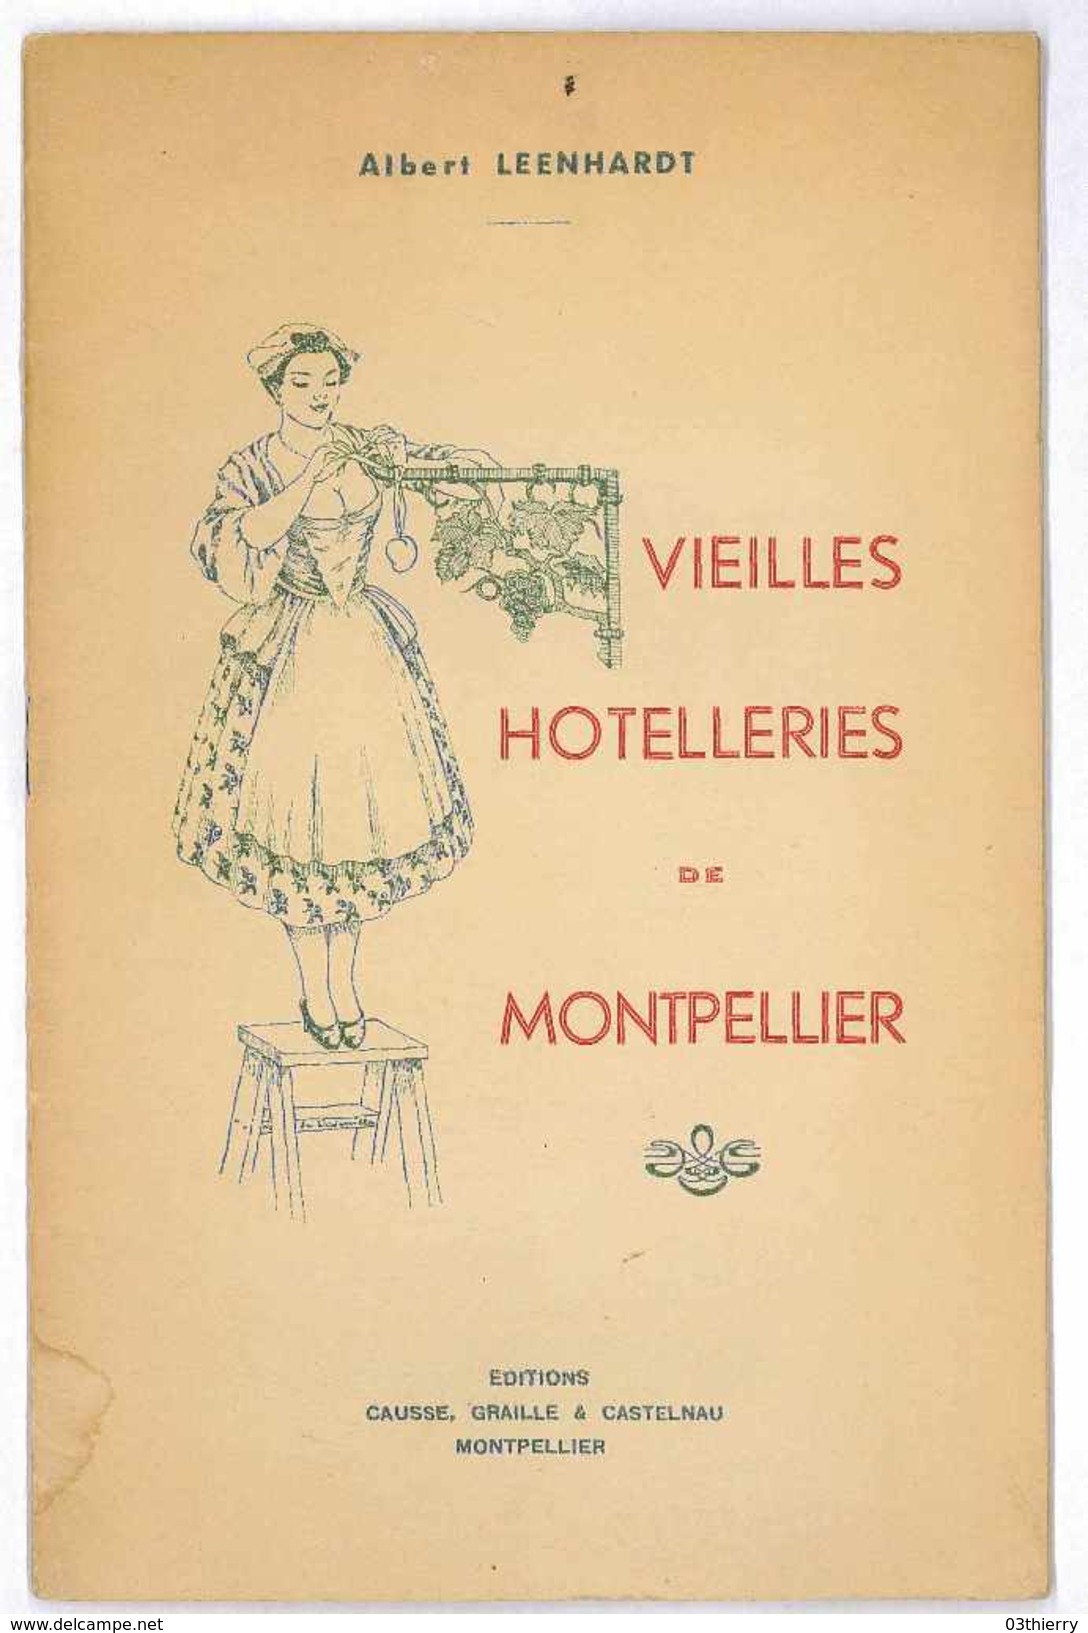 VIEILLES HOTELLERIES DE MONTPELLIER 1938 ALBERT LEENHART EDIT CAUSSE - 1901-1940